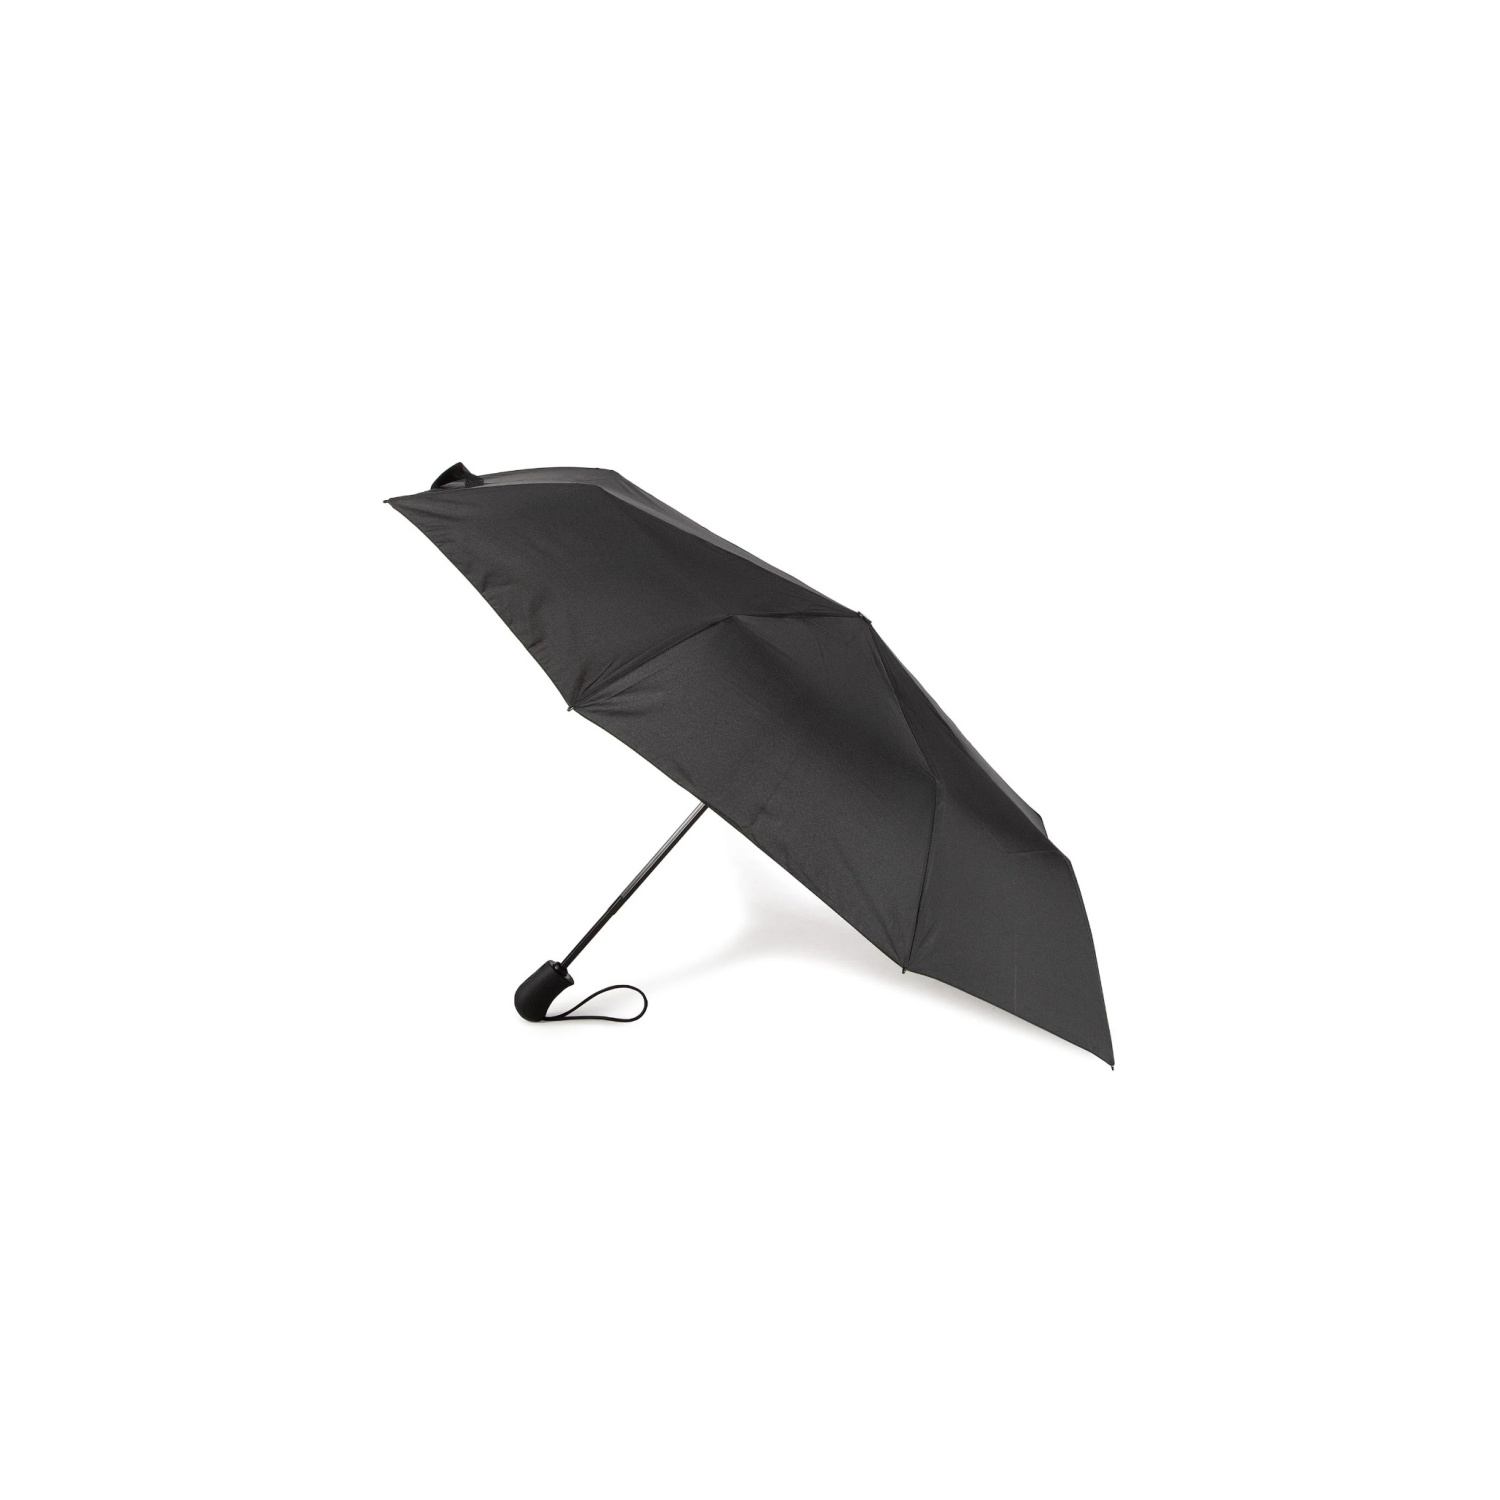 Reserveren Concurreren Portiek Esprit Paraplu Zwart - Paraplu's - Accessoires - Heren - Berca.be